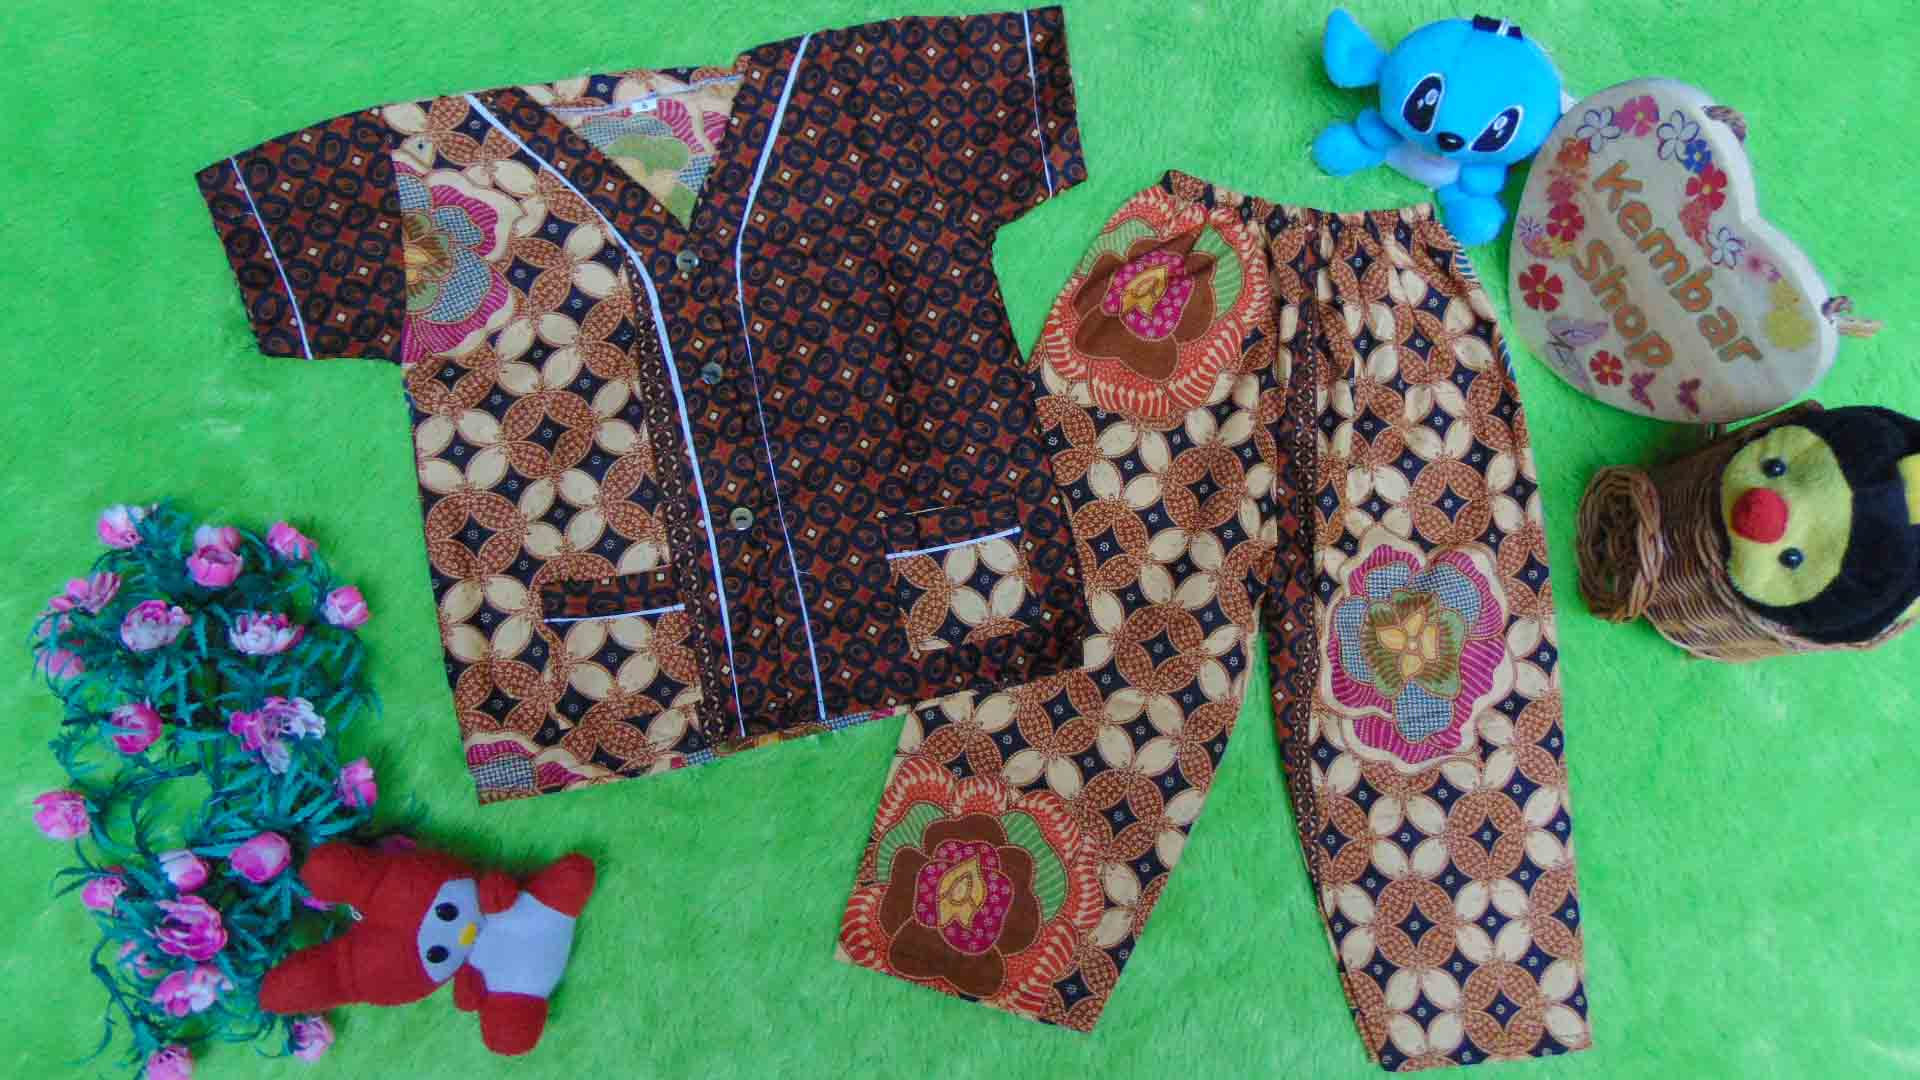 Setelan Baju Tidur Piyama Batik Bayi Celana Panjang size s 6-18bln motif kawung kembang RANDOM